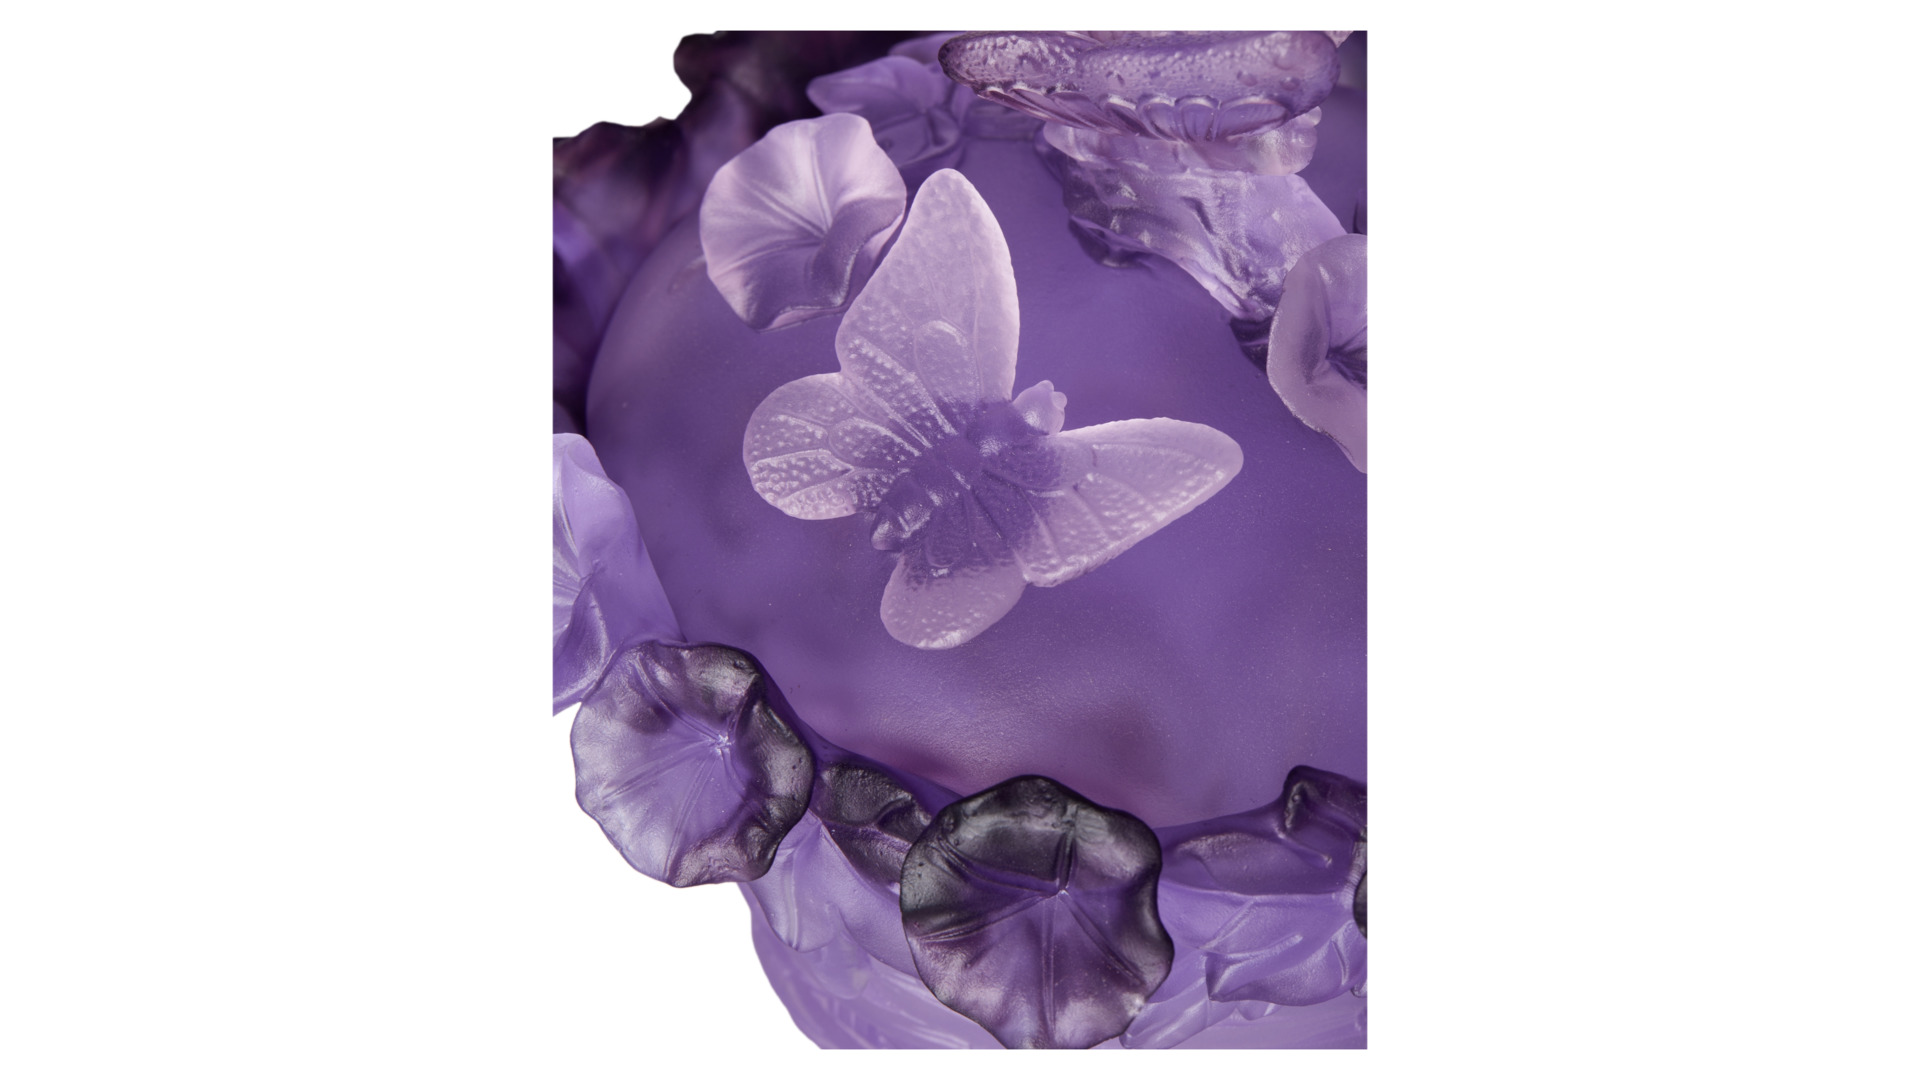 Конфетница Decor de table Бабочка 17 см, хрусталь, фиолетовая